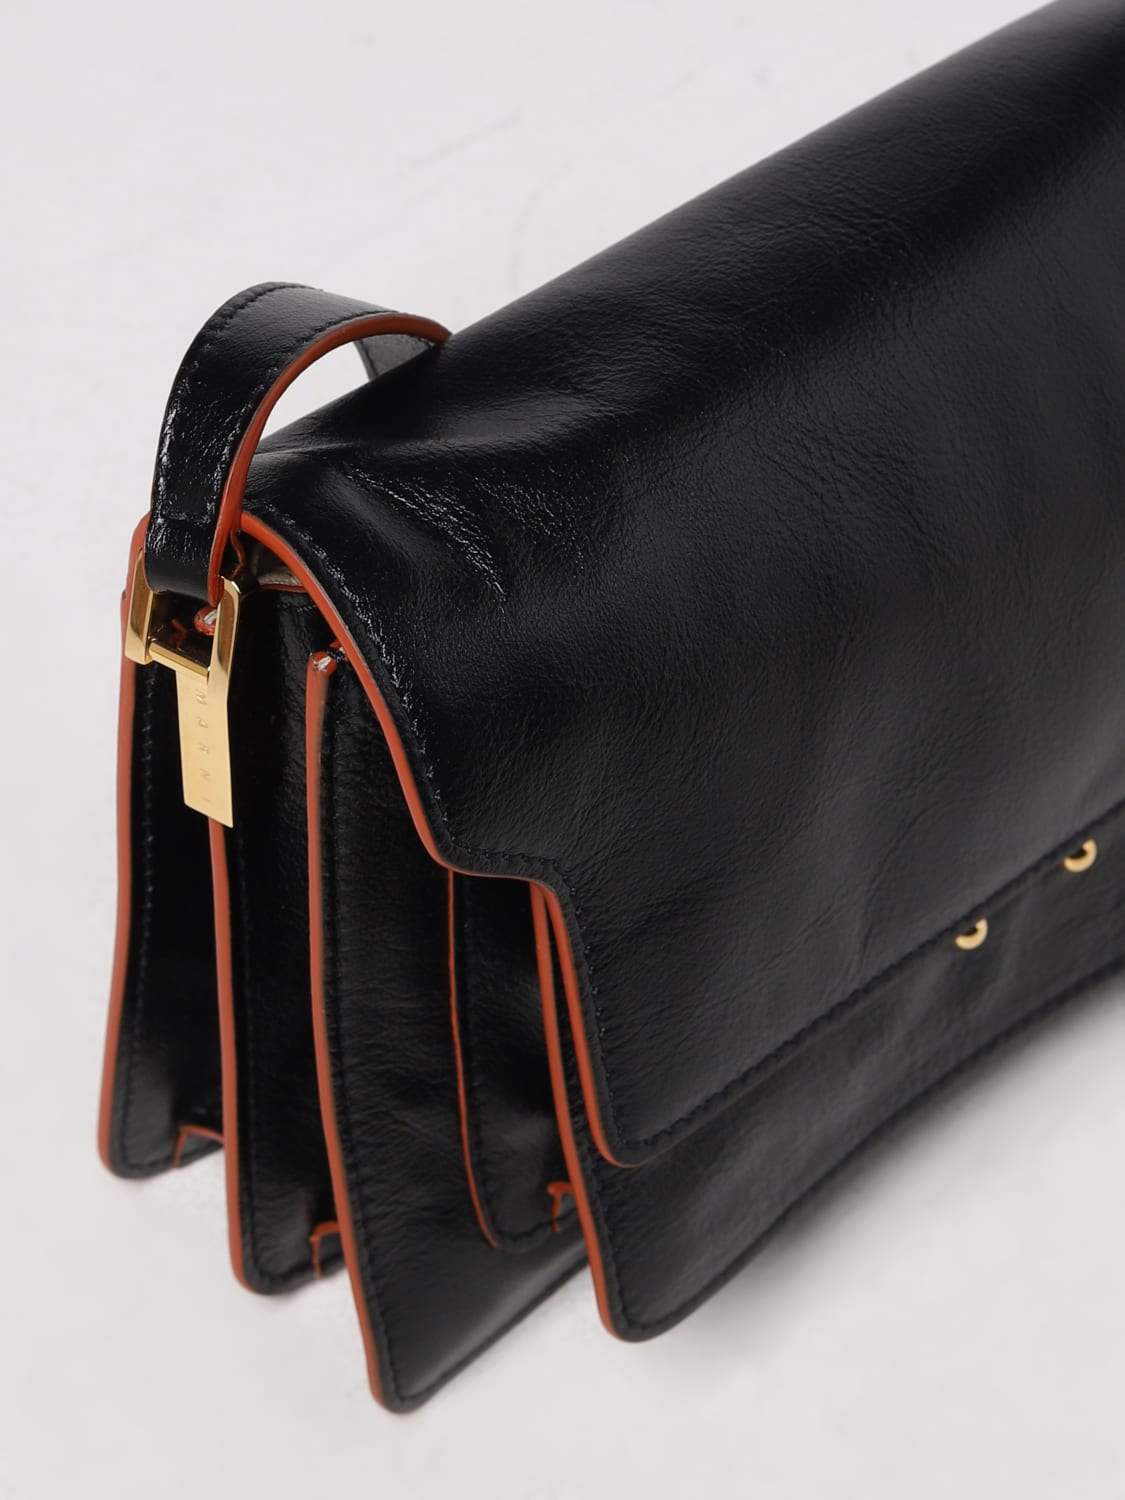 Black Trunk leather shoulder bag, Marni